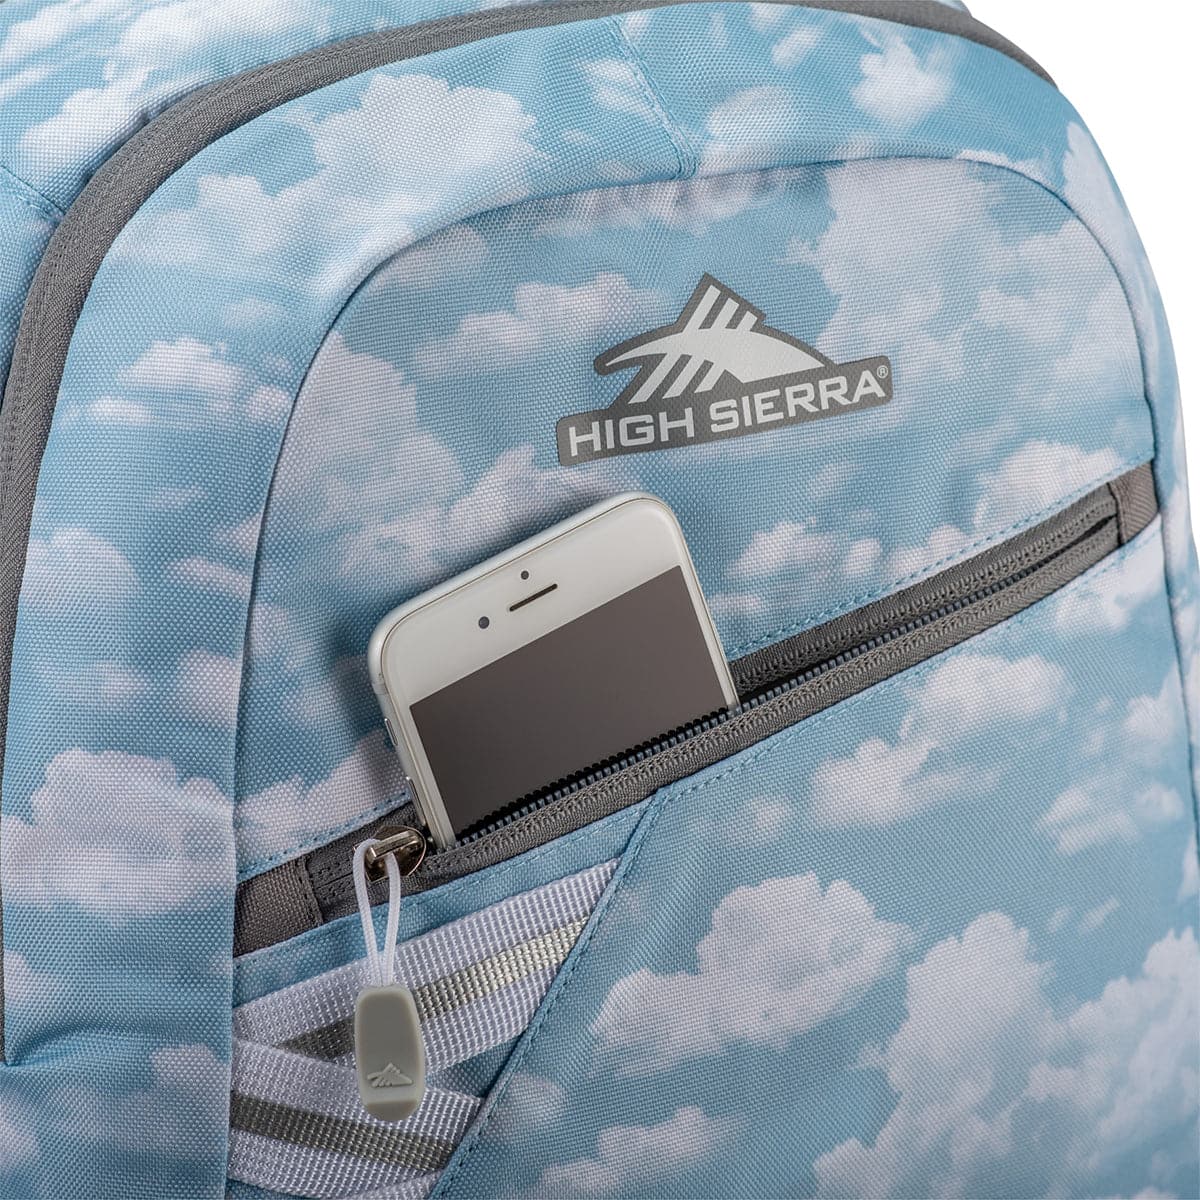 High Sierra Outburst 2 Laptop Backpack